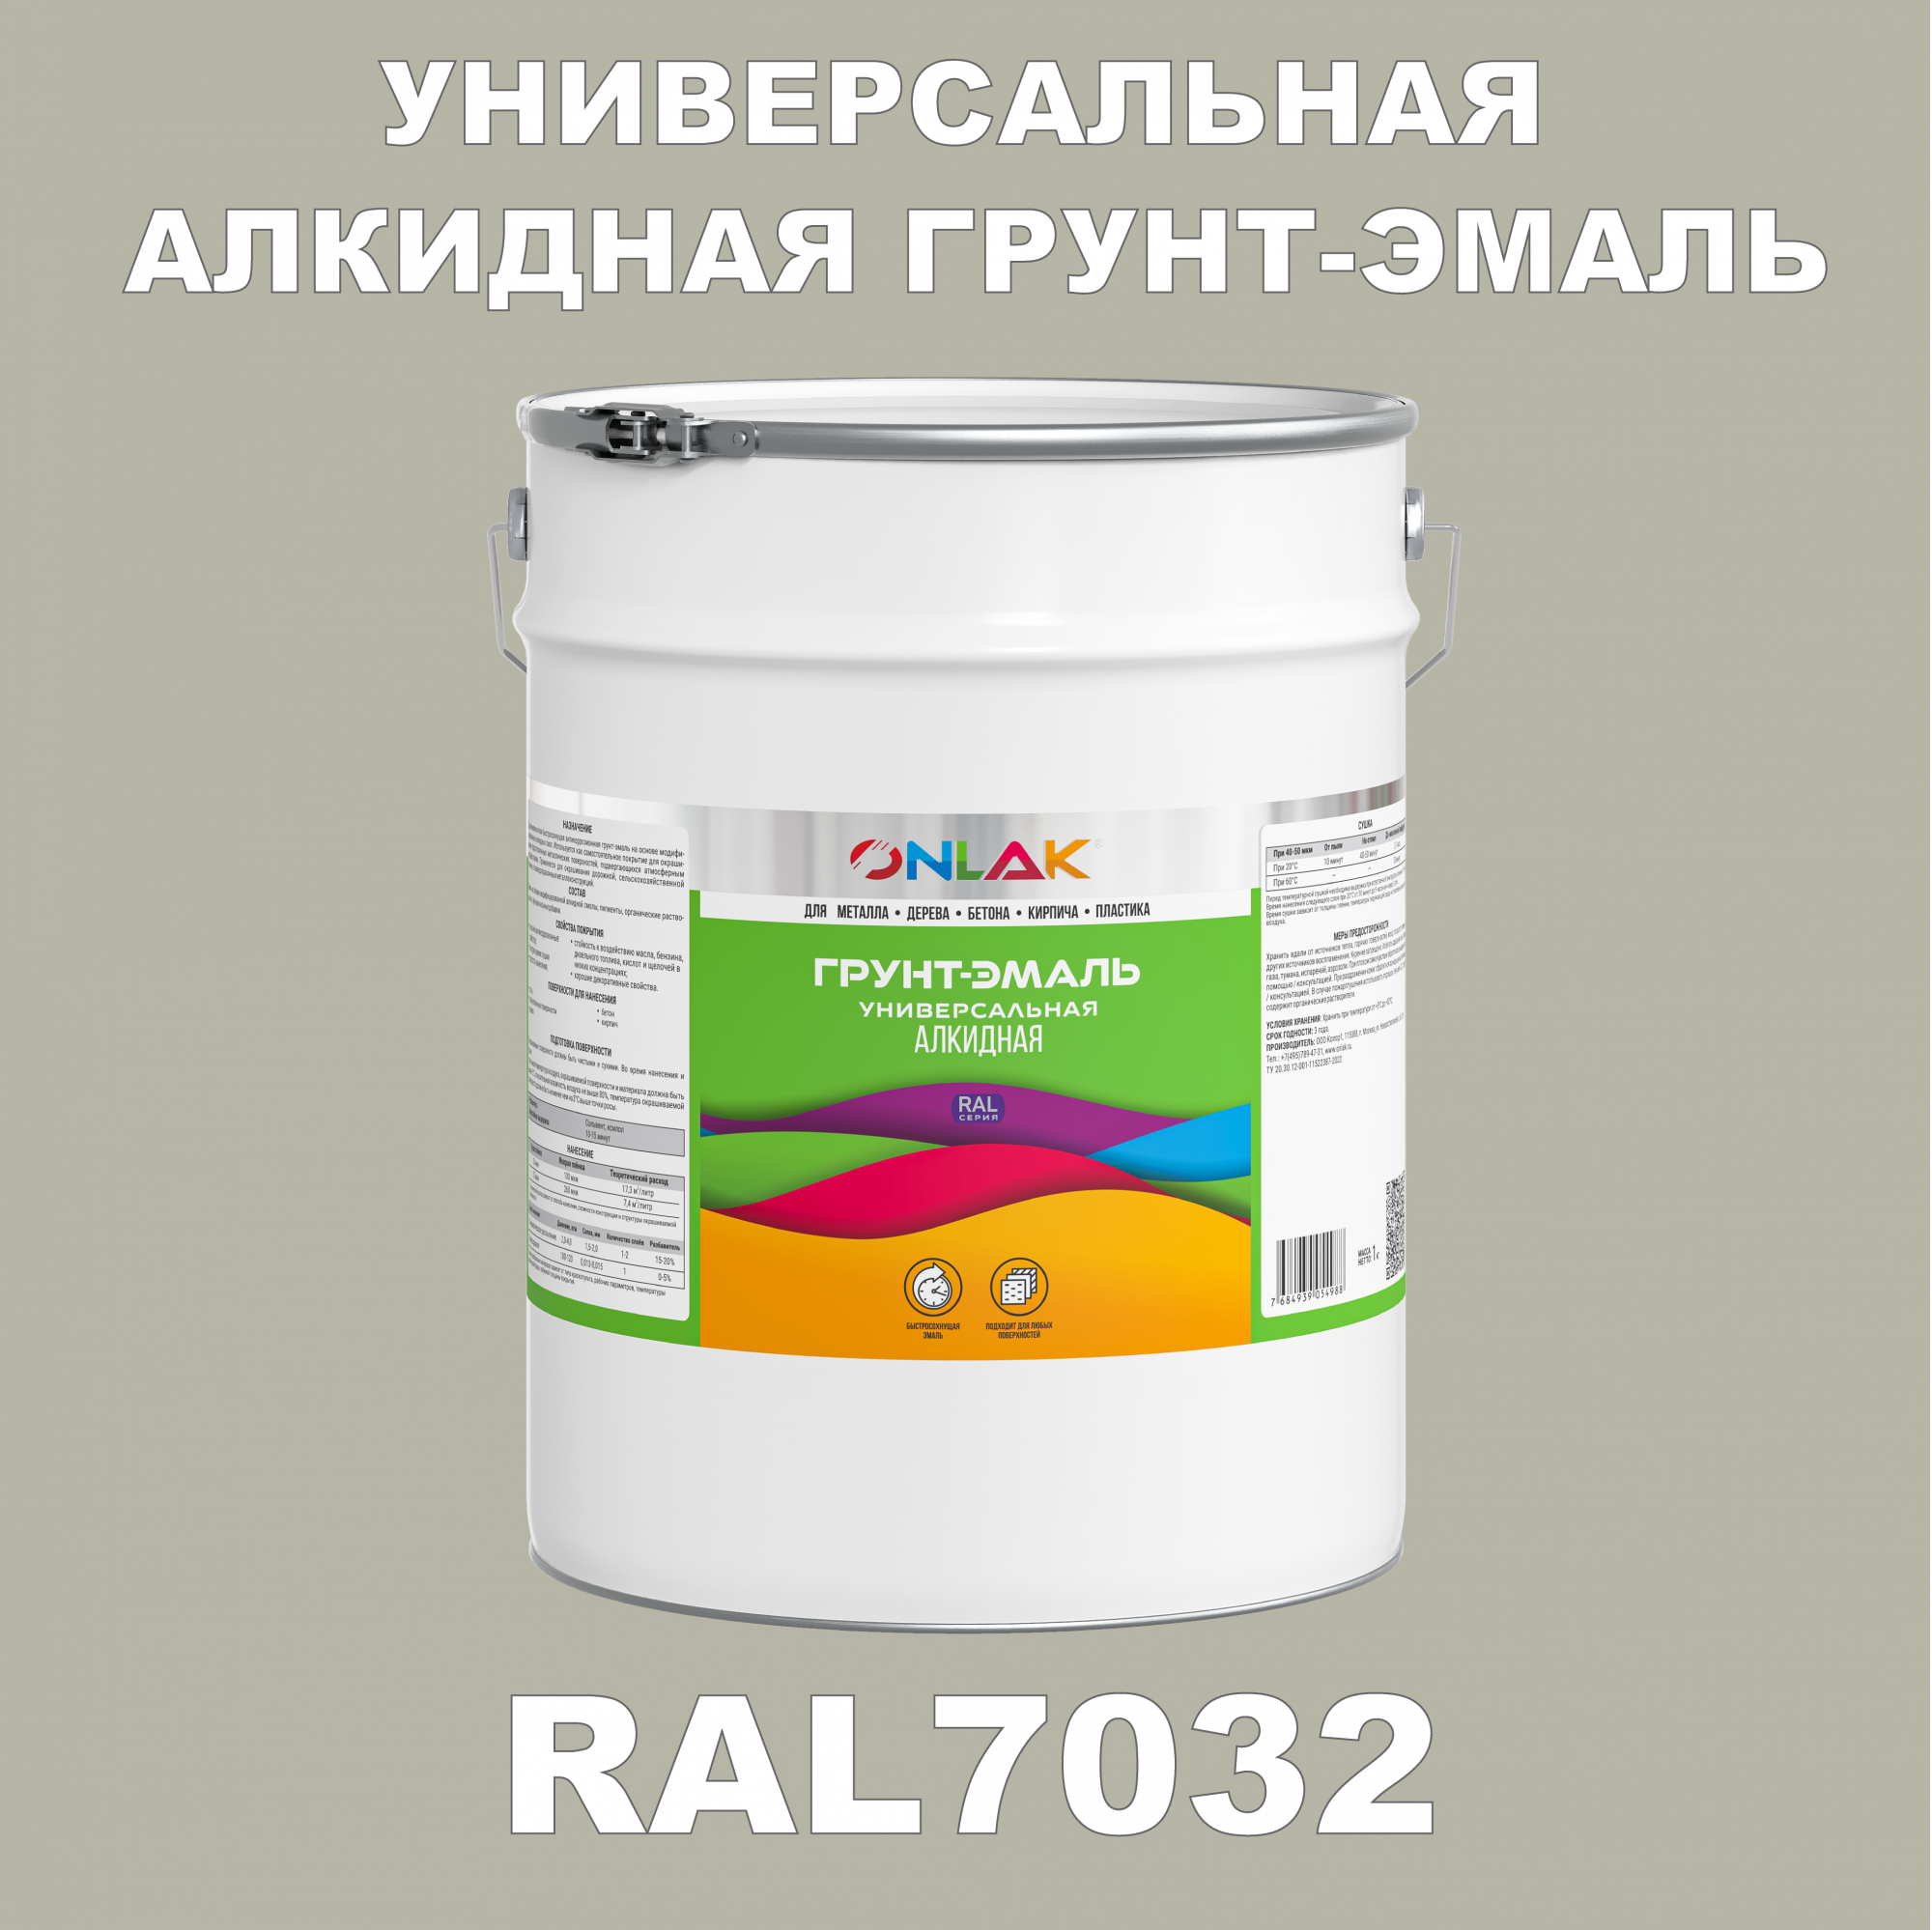 Грунт-эмаль ONLAK 1К RAL7032 антикоррозионная алкидная по металлу по ржавчине 20 кг грунт эмаль yollo по ржавчине алкидная серая 0 9 кг